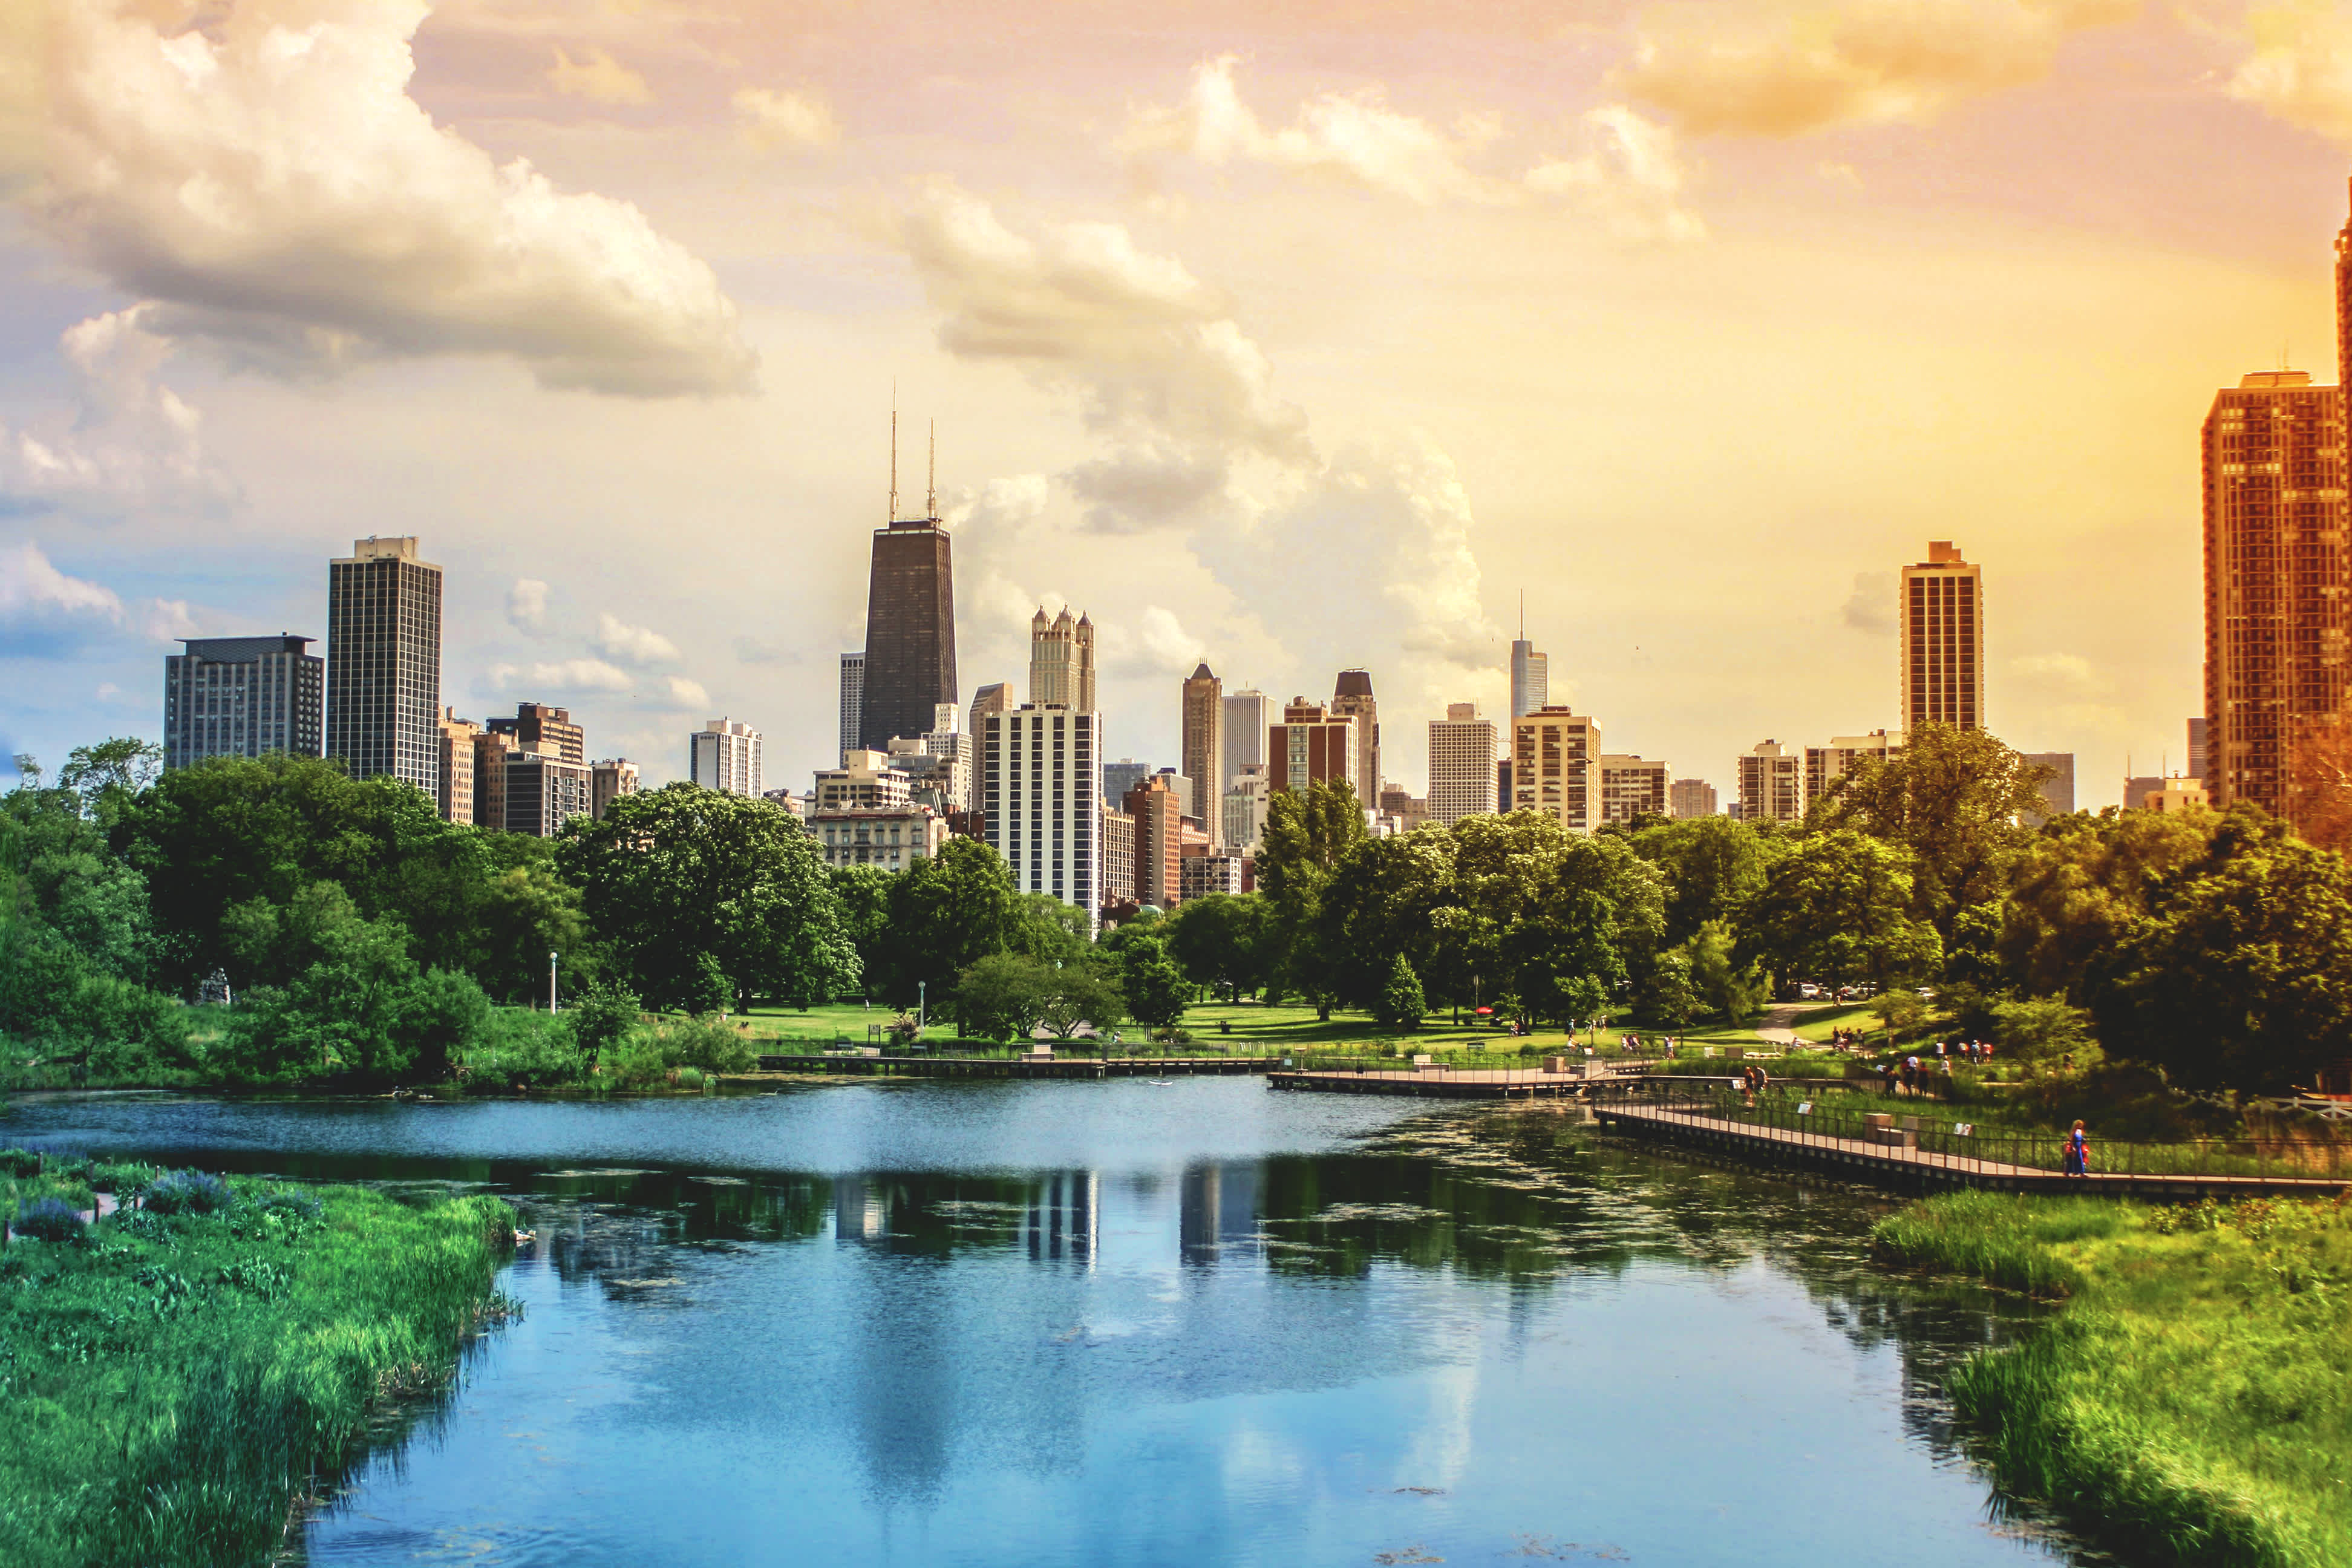 Ervaar een uniek uitzicht op de skyline tijdens een vakantie in Chicago